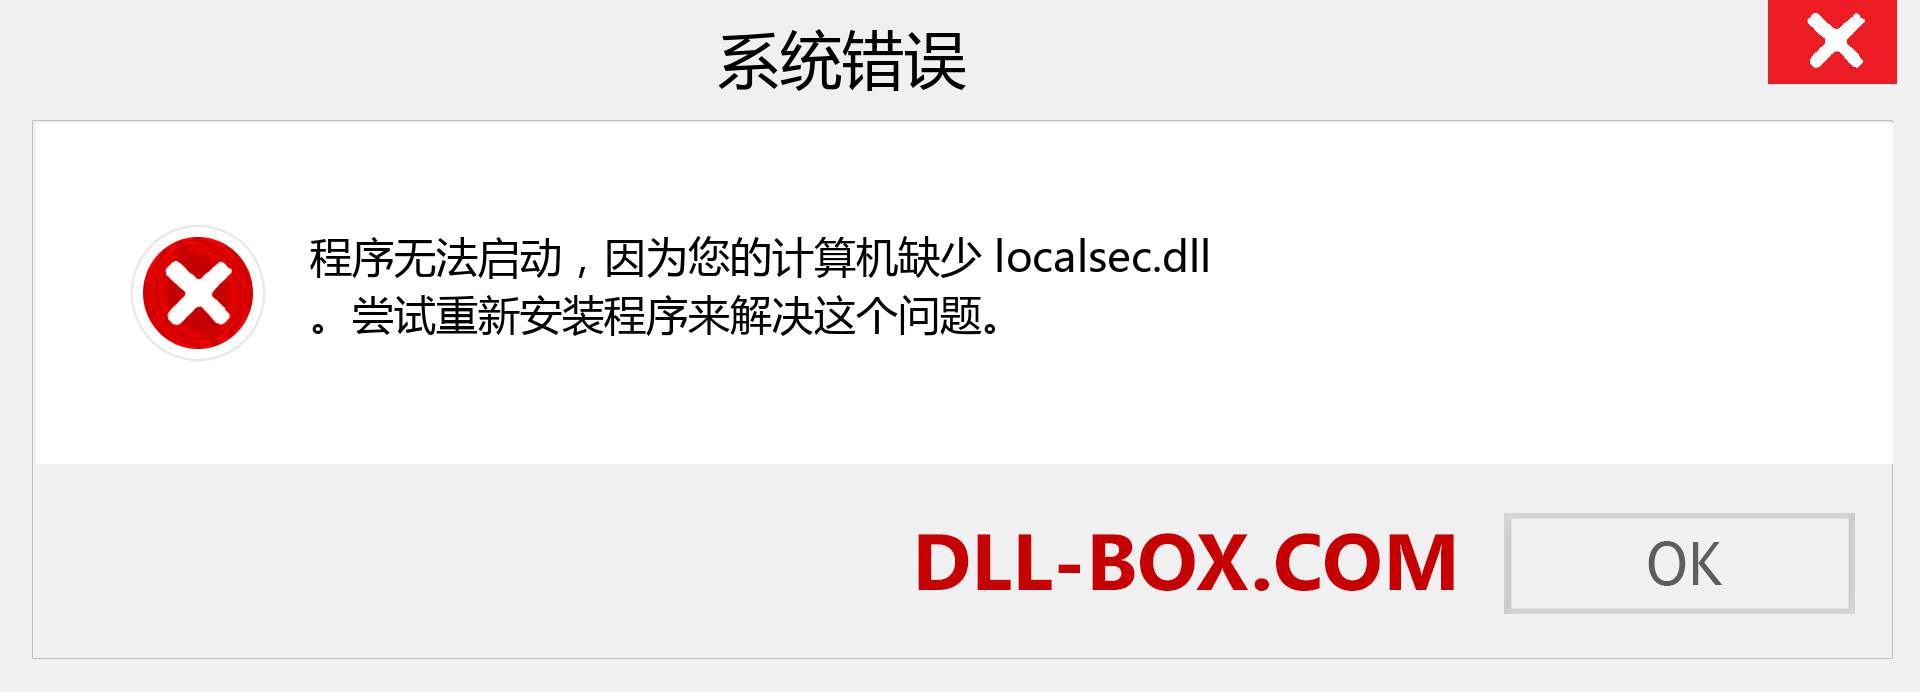 localsec.dll 文件丢失？。 适用于 Windows 7、8、10 的下载 - 修复 Windows、照片、图像上的 localsec dll 丢失错误